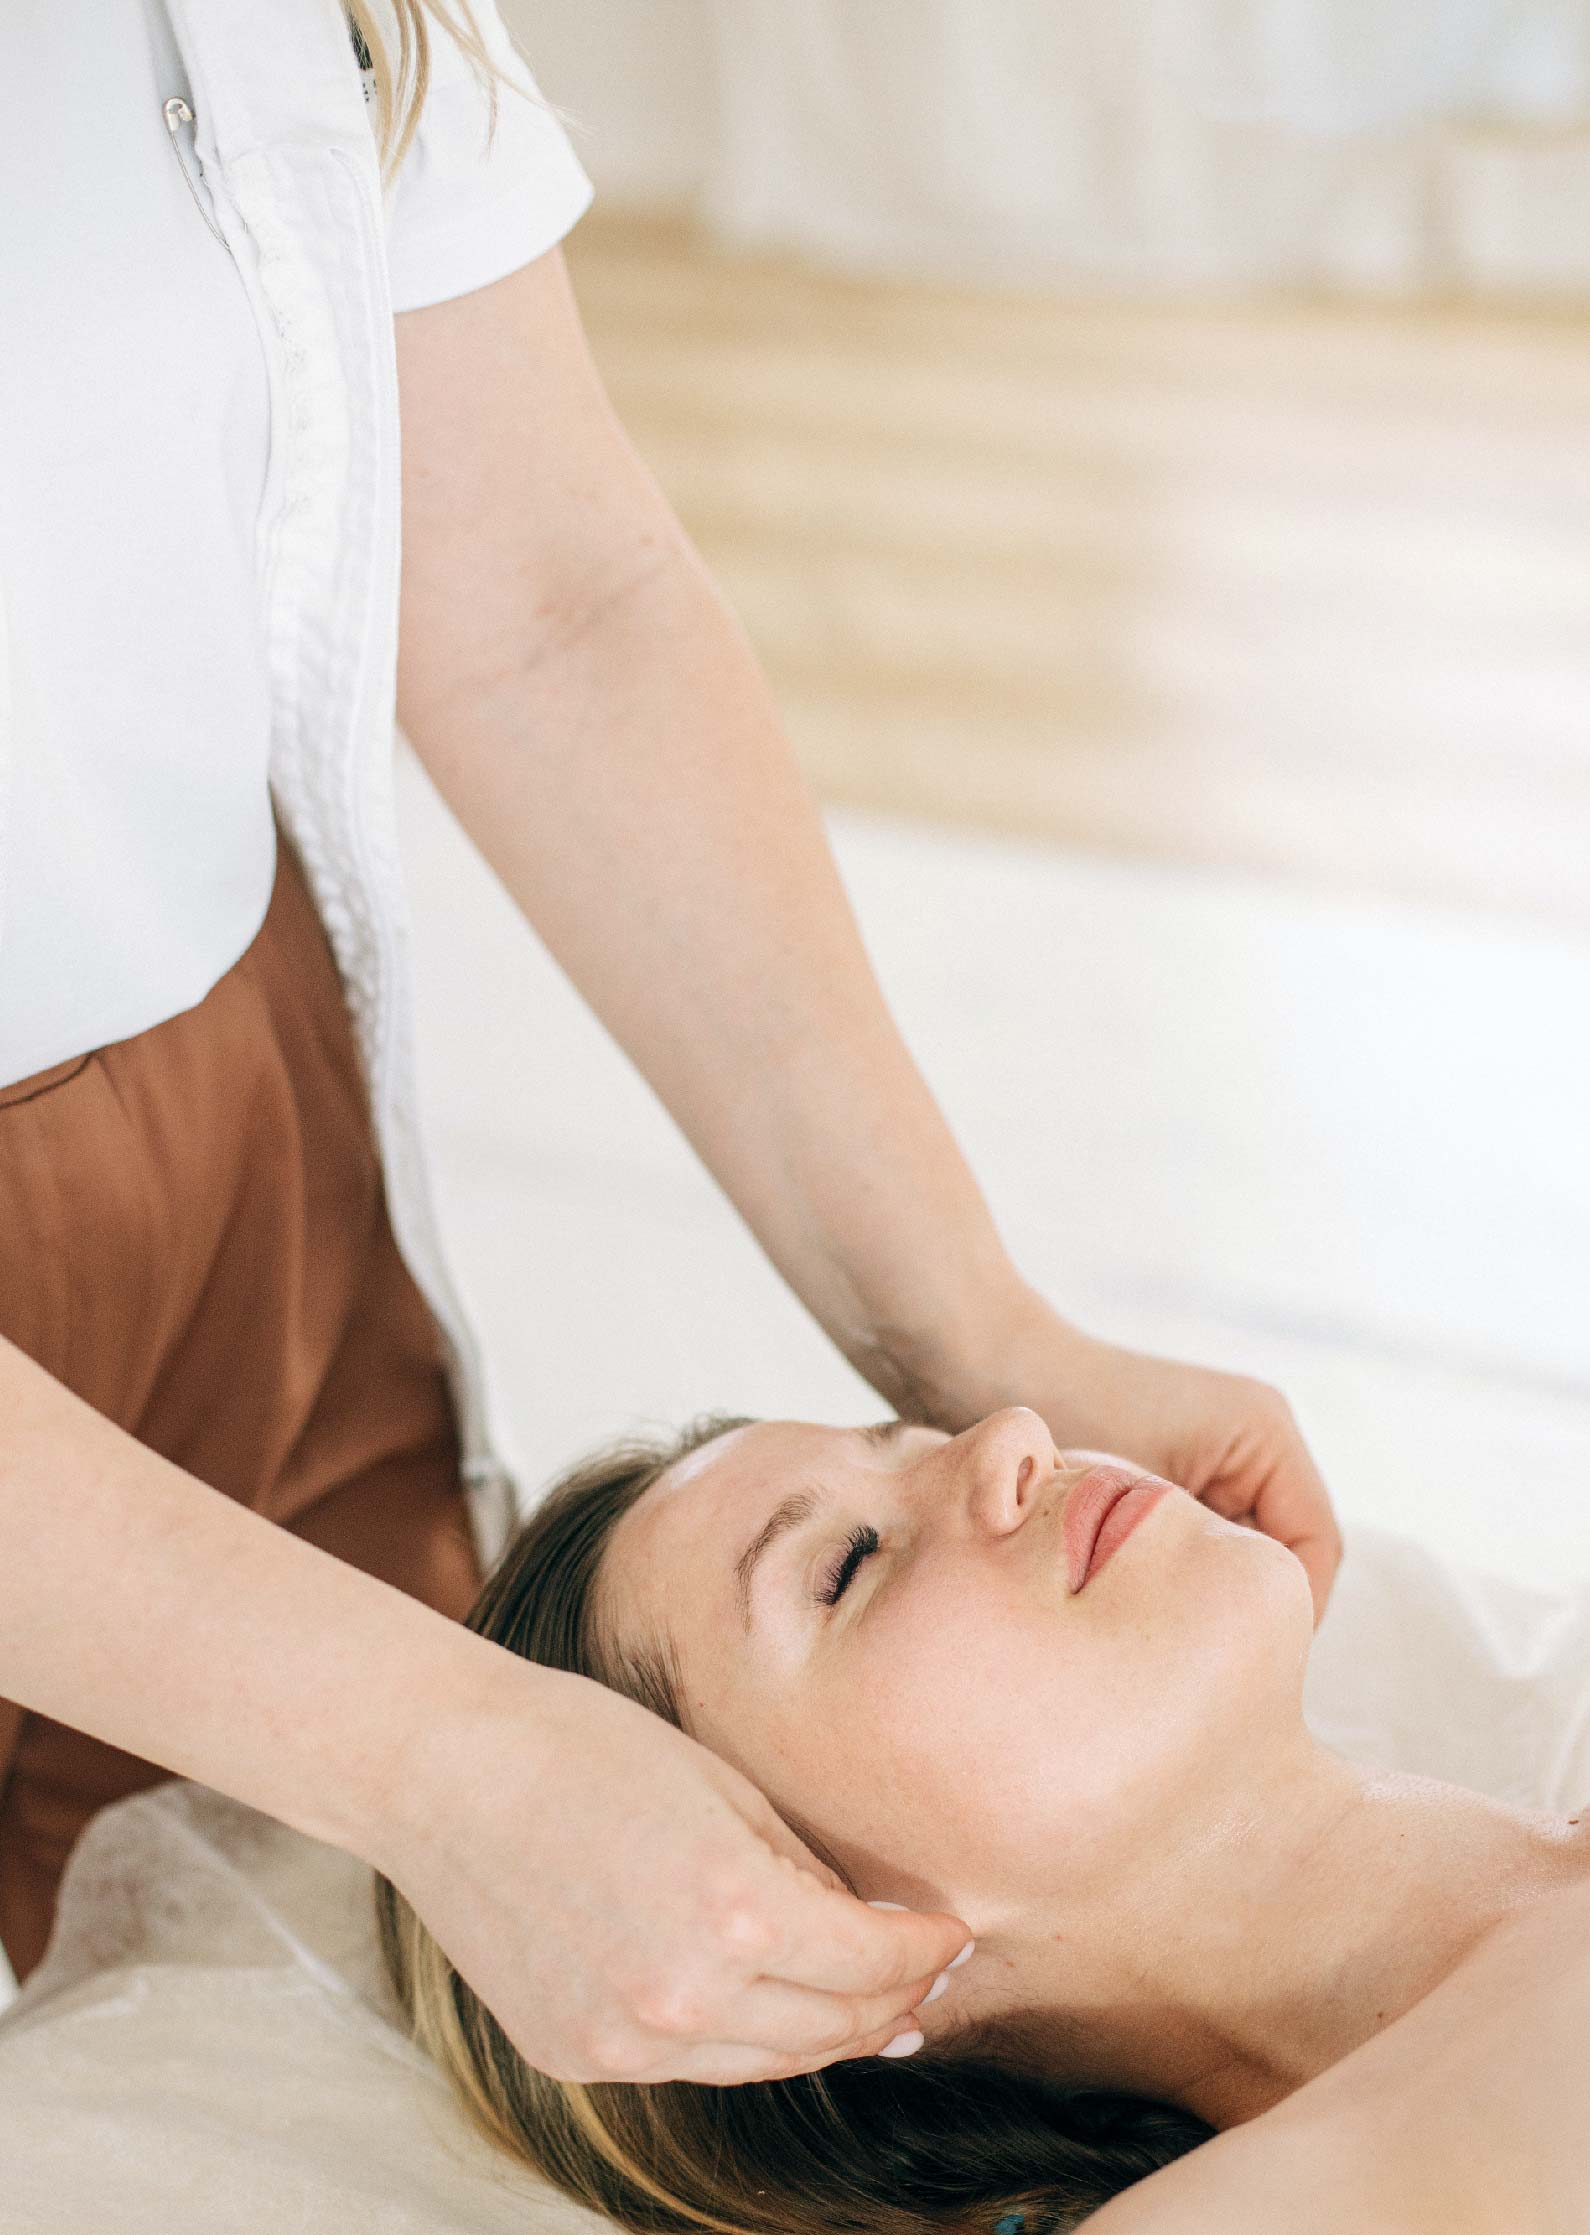 masaje craneosacral en curso terapia craneosacral 